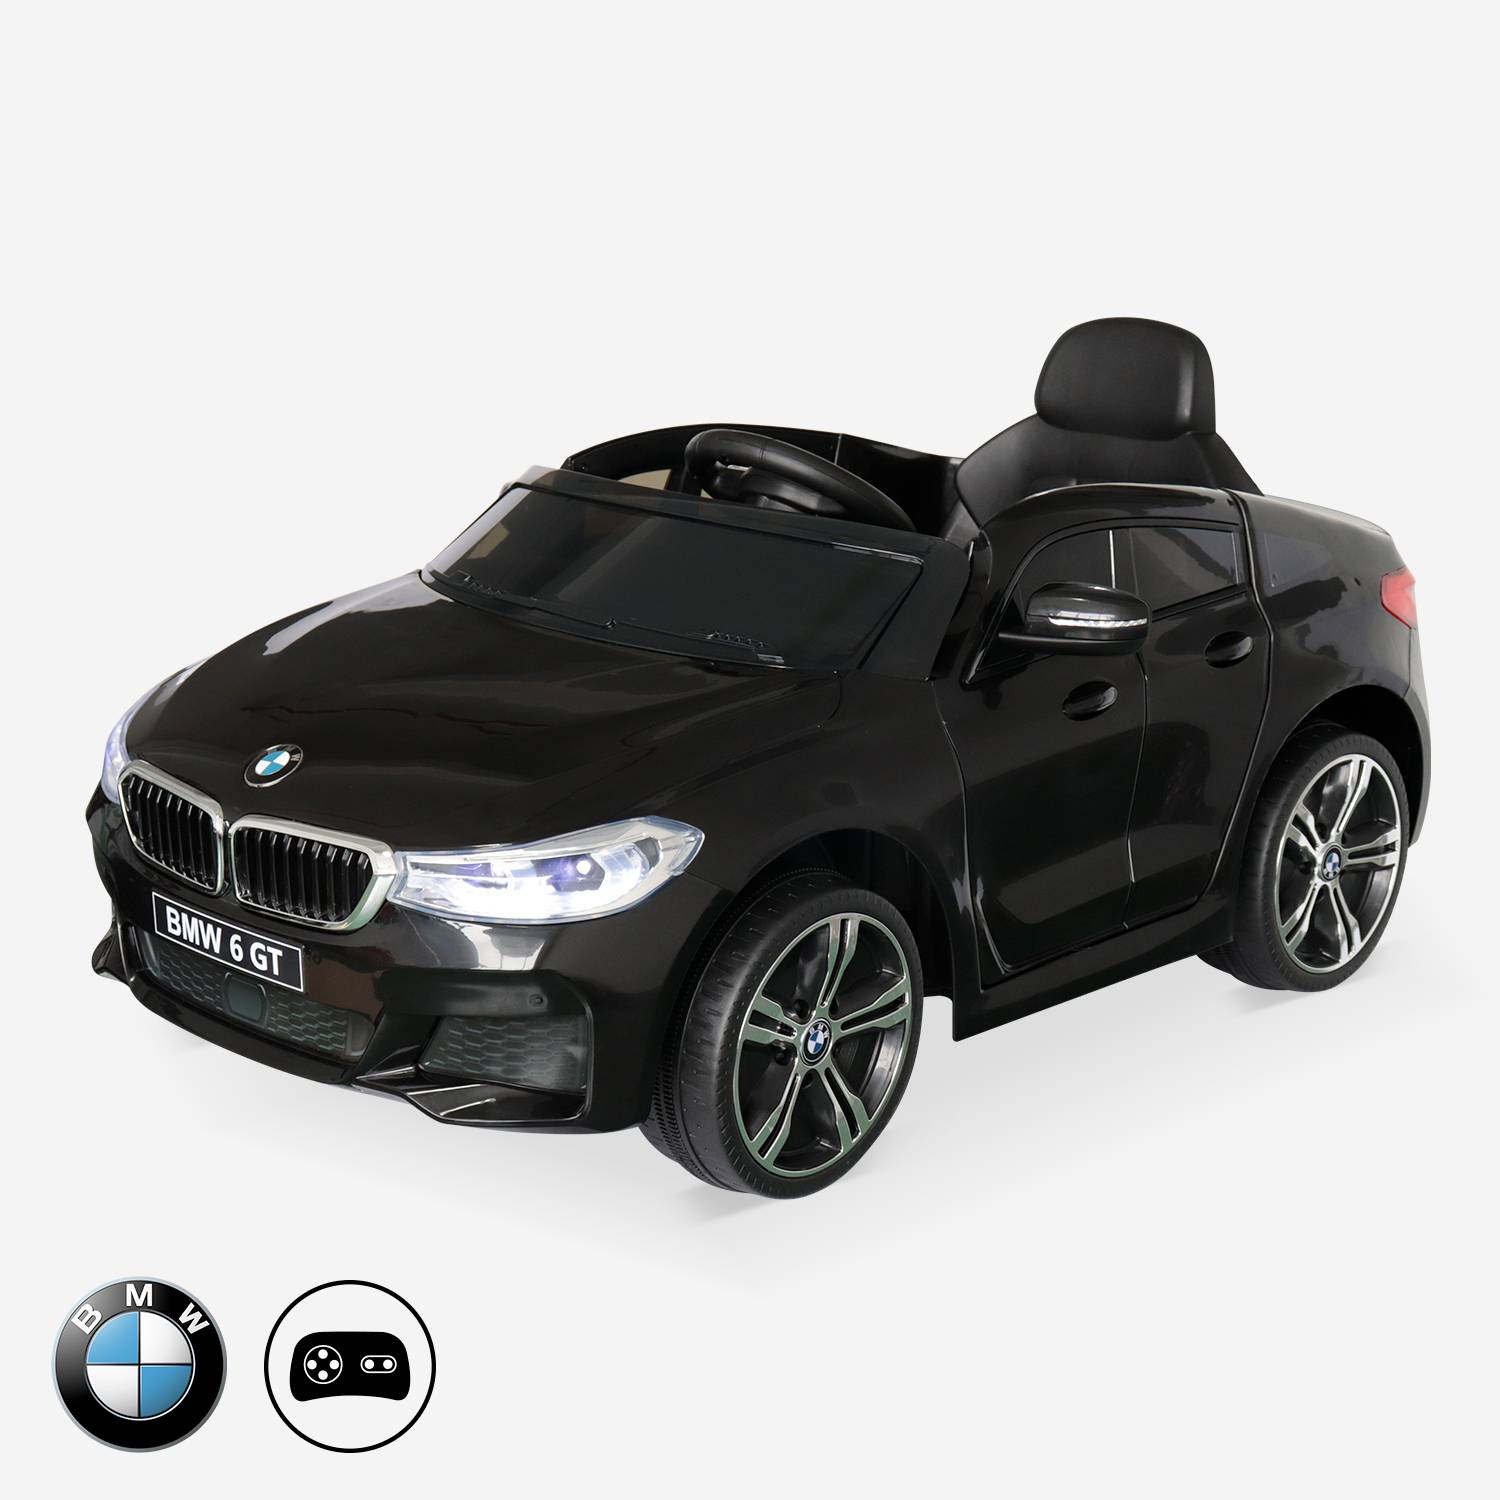 BMW Série 6 GT Gran Turismo noire, voiture électrique pour enfants 12V 4 Ah, 1 place, avec autoradio et télécommande Photo2